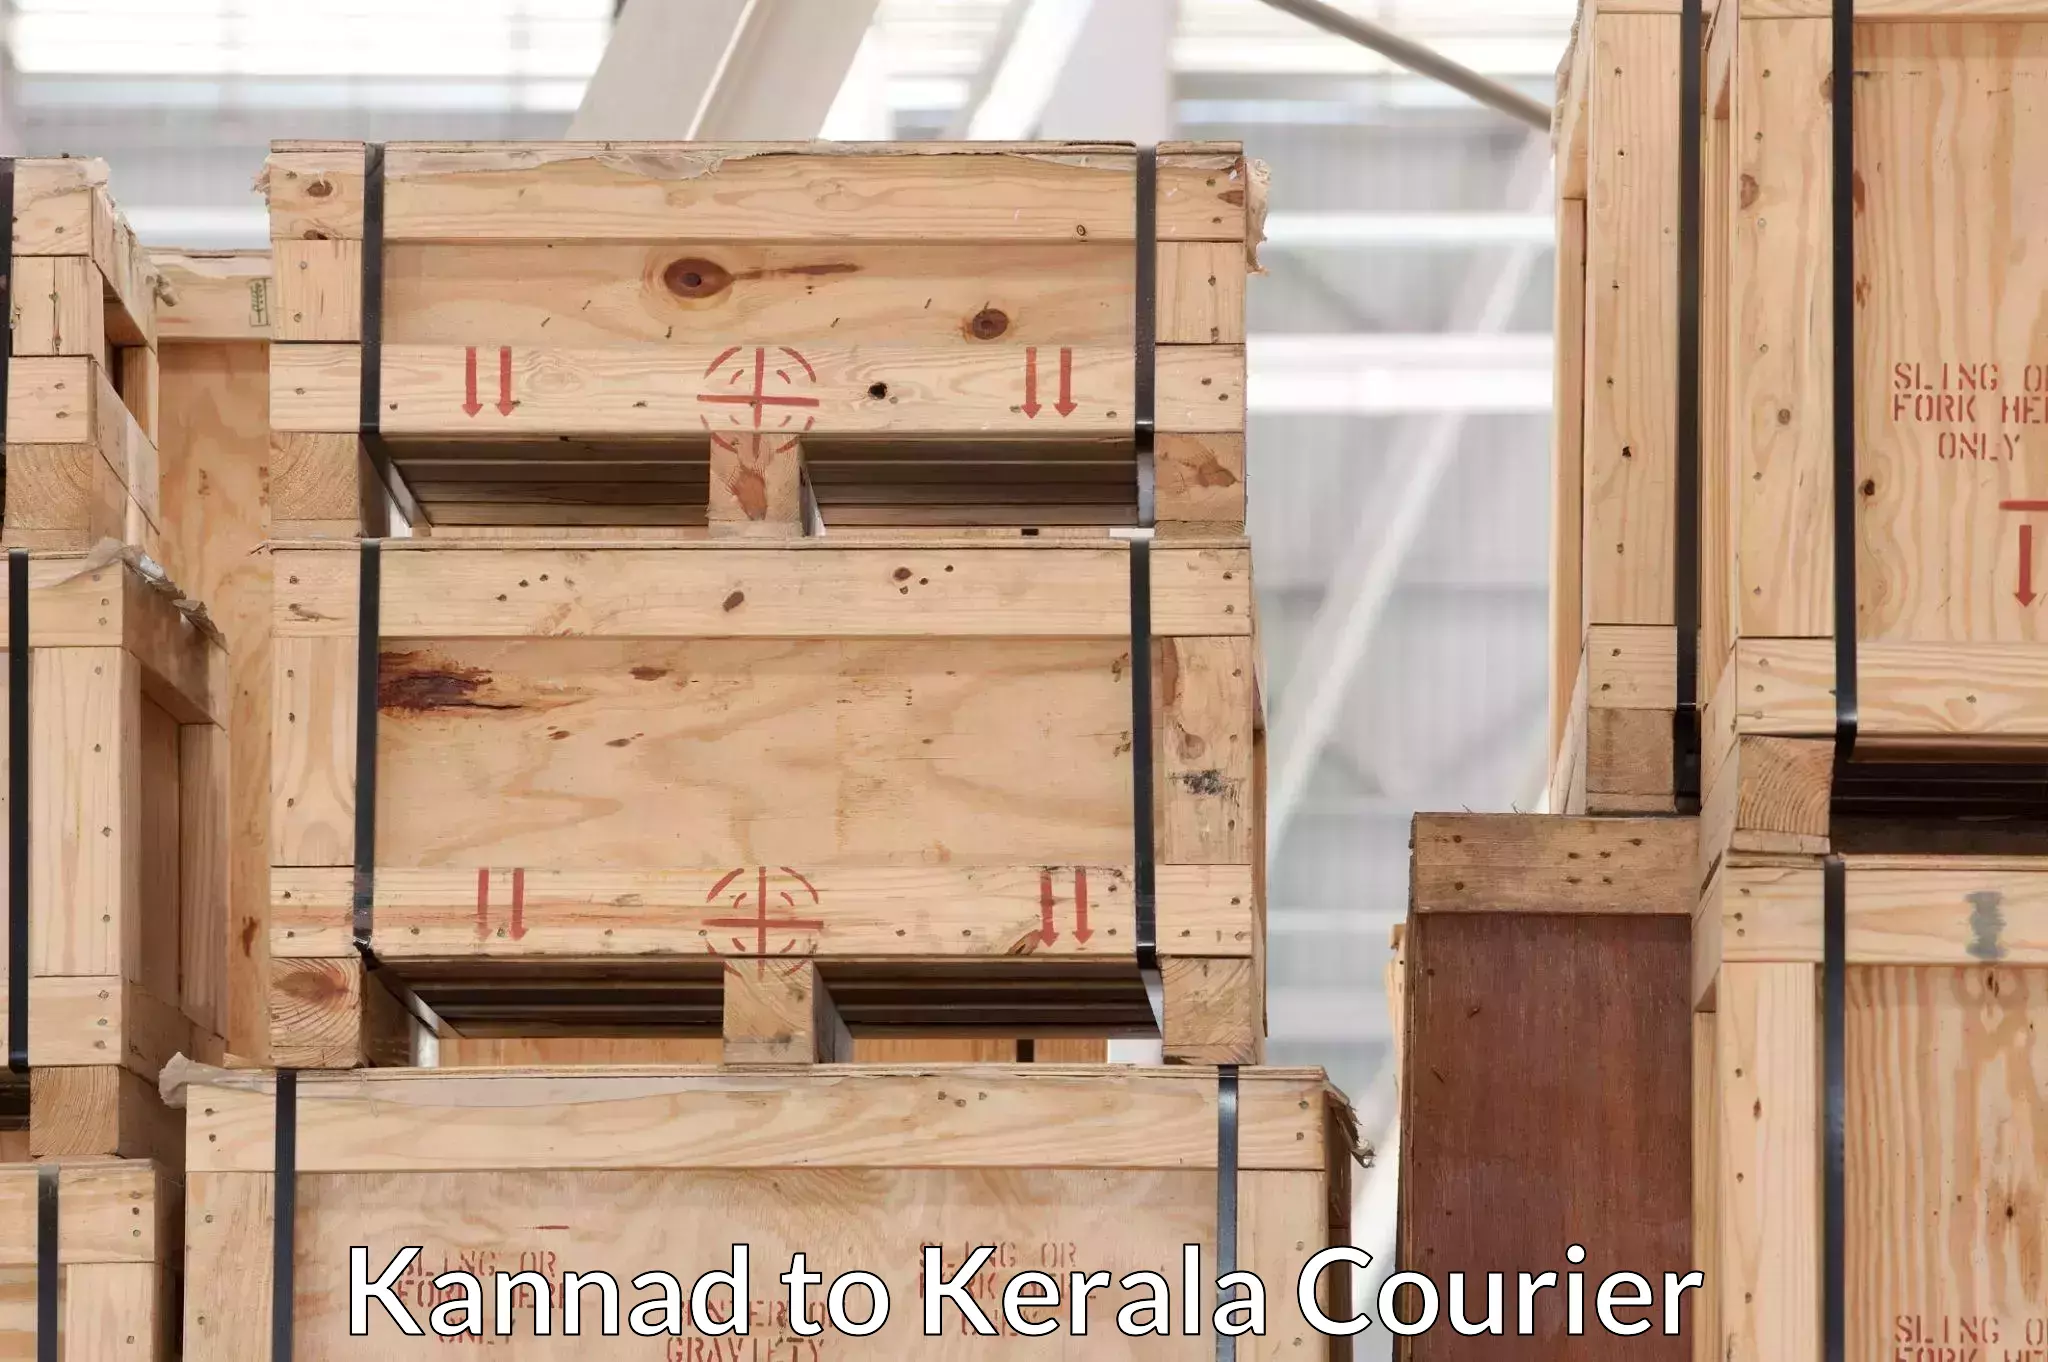 Efficient packing and moving Kannad to Venjaramoodu